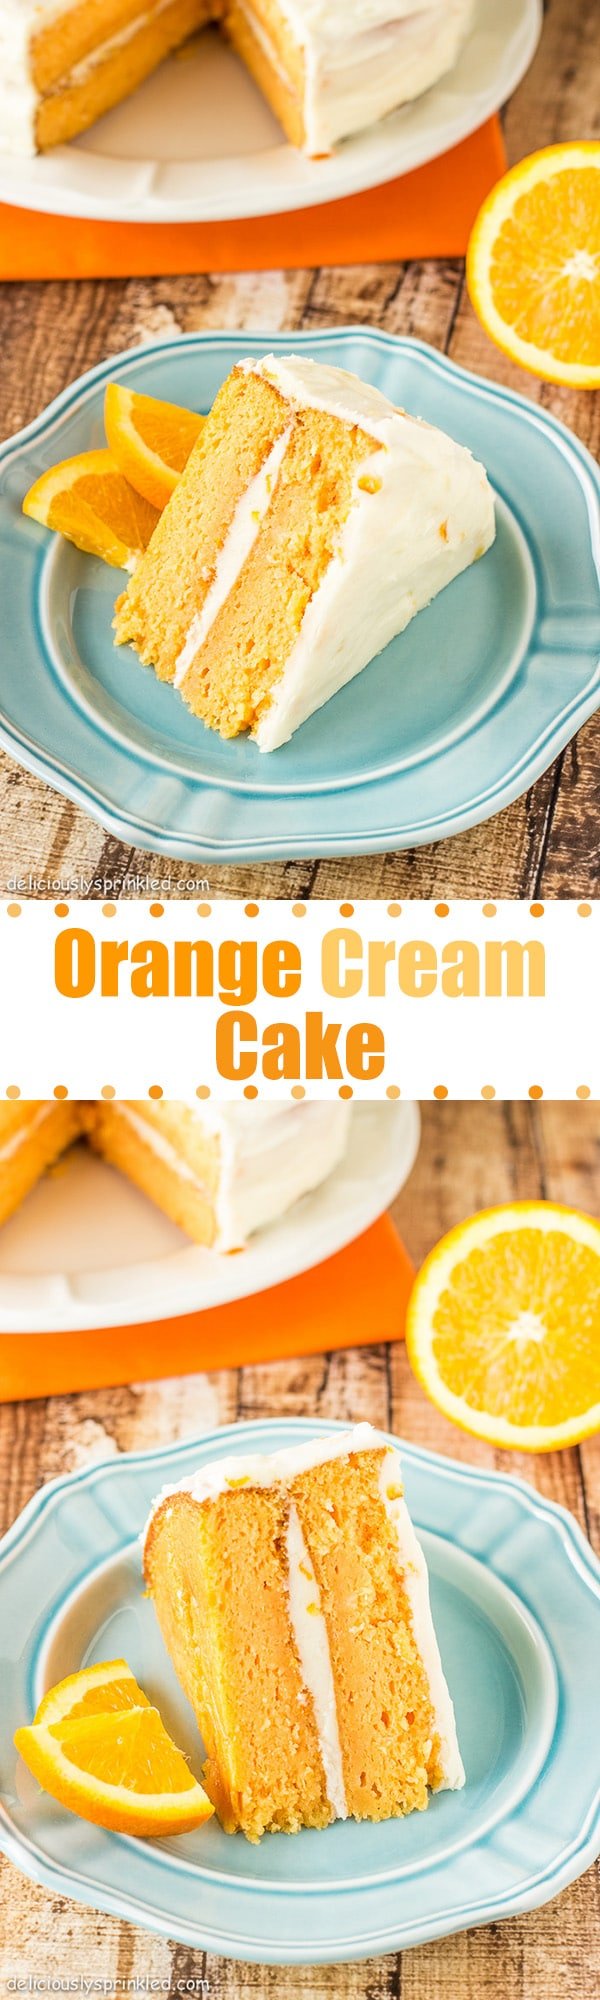 orange creamsicle cake pinterest image